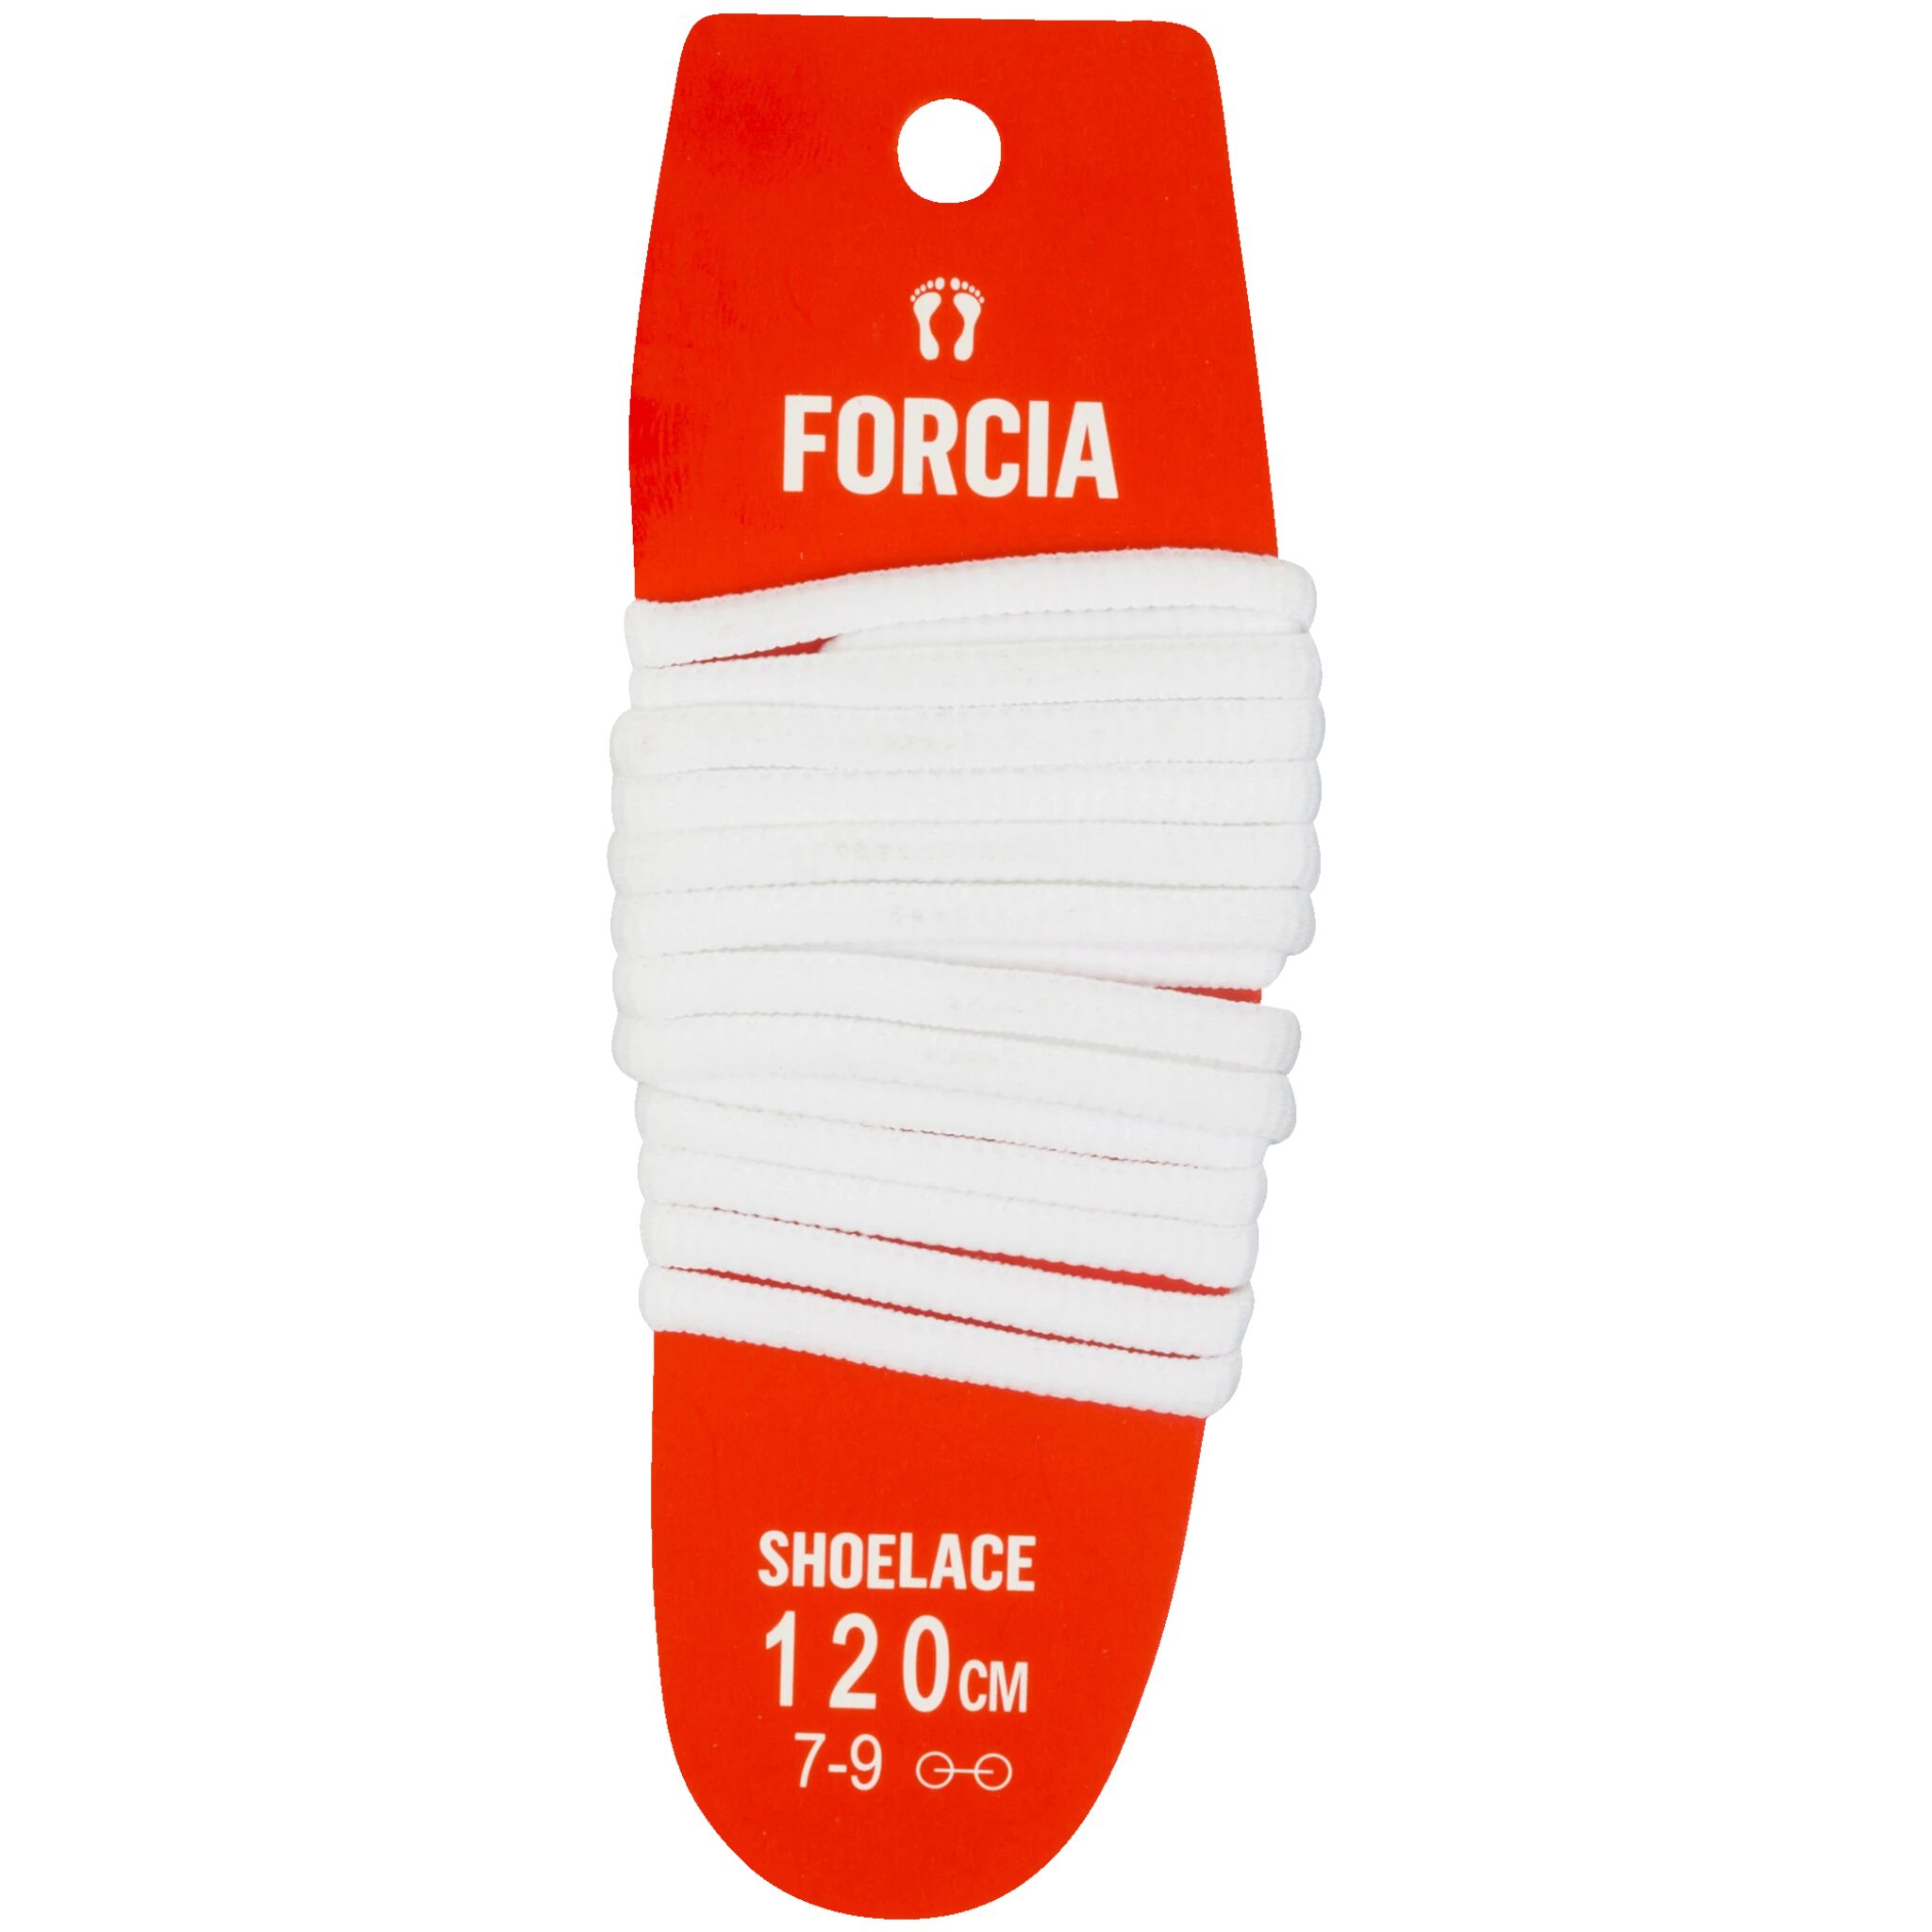 Forcia ShoeLace 120cm, skolisser 120cm White